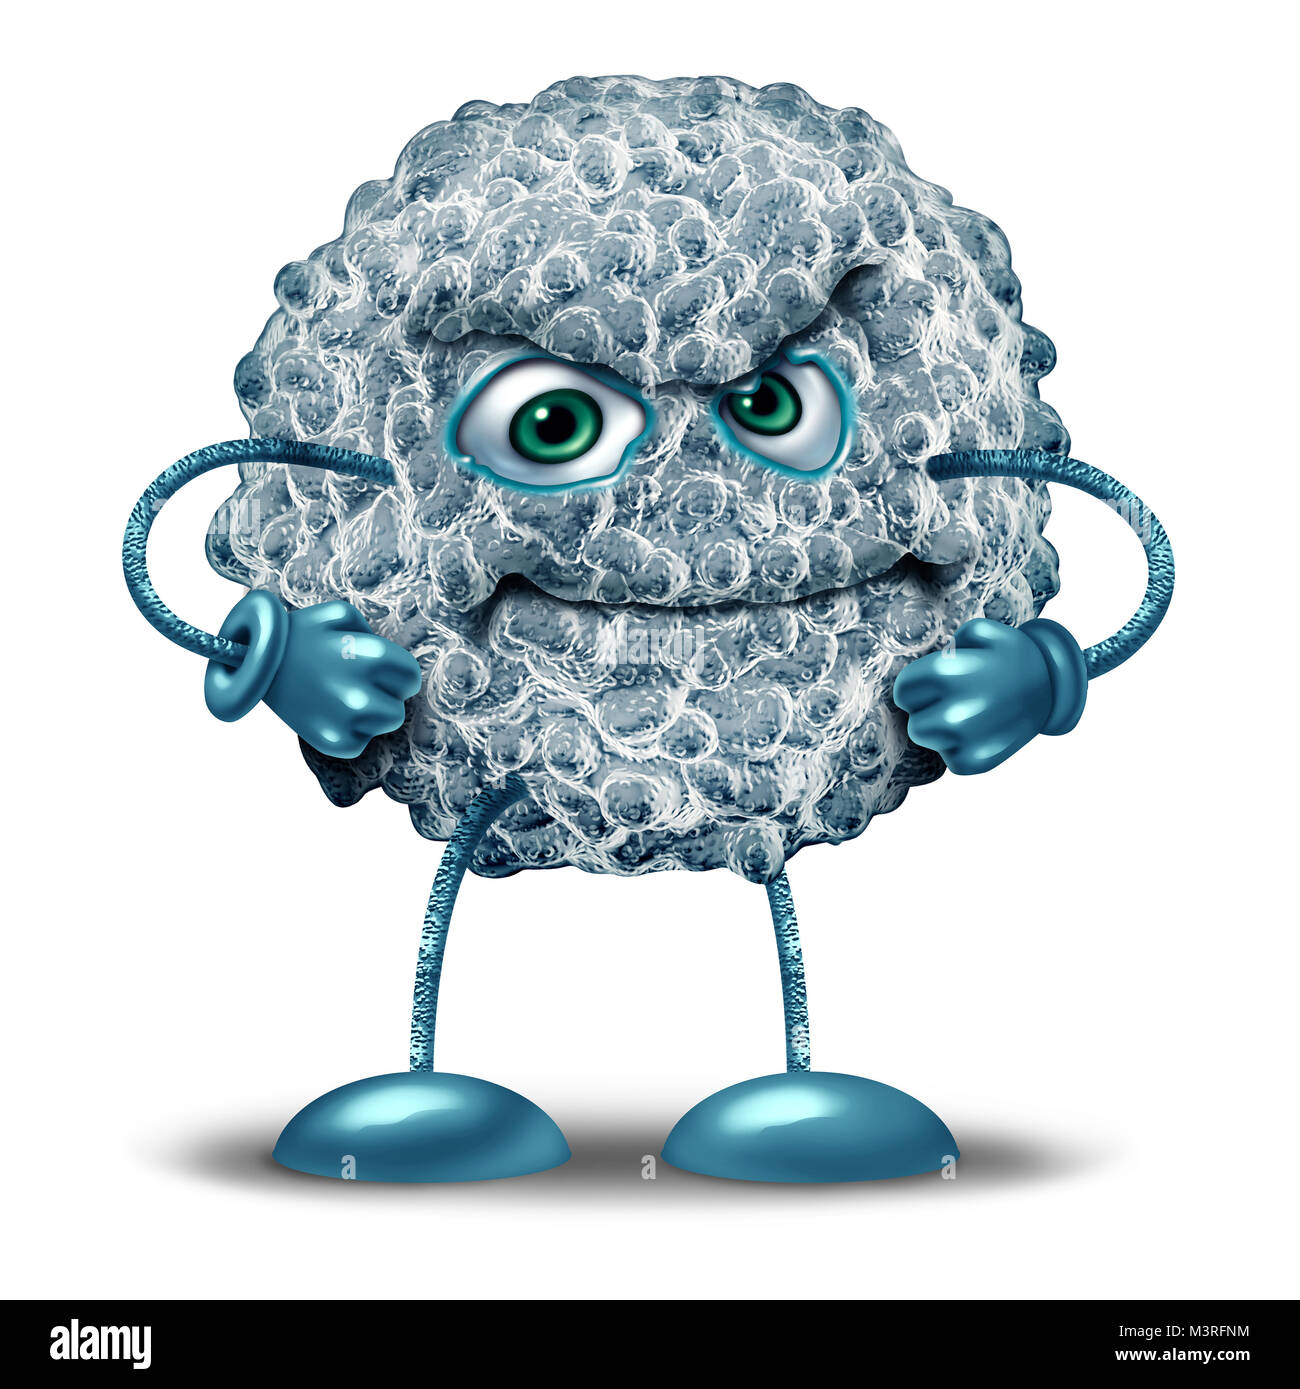 Weiße Blutkörperchen Charakter als Mikrobiologie Symbol des menschlichen Immunsystems im Kampf gegen Infektionen zu verteidigen und zu schützen. Stockfoto